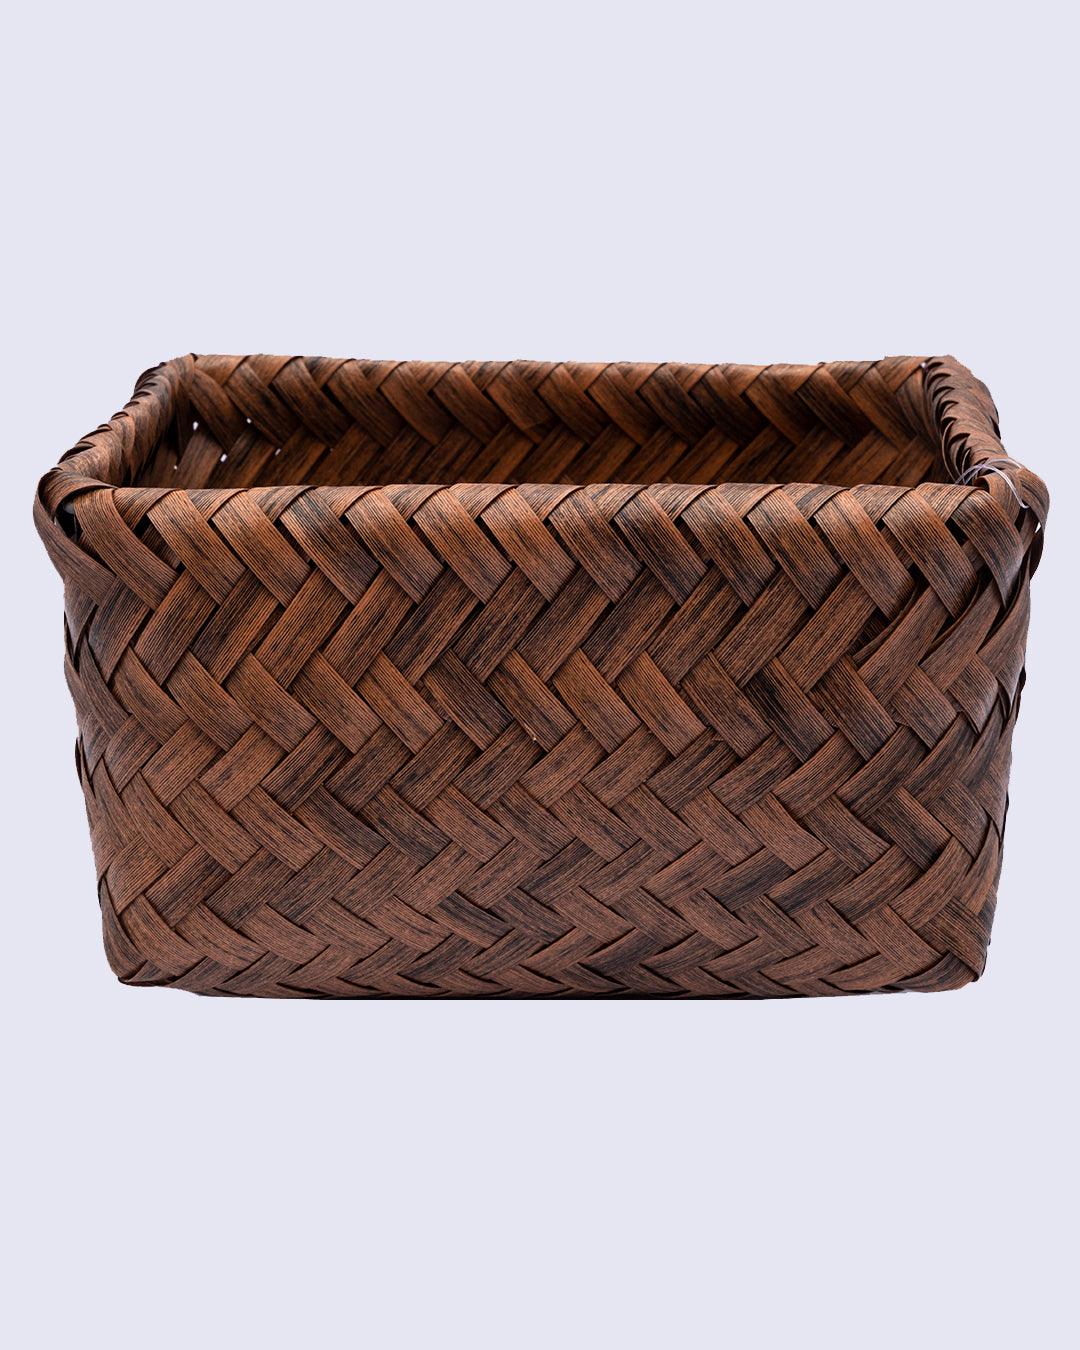 Market99 Baskets, for Storage, Brown, Plastic, Set of 3 - MARKET 99